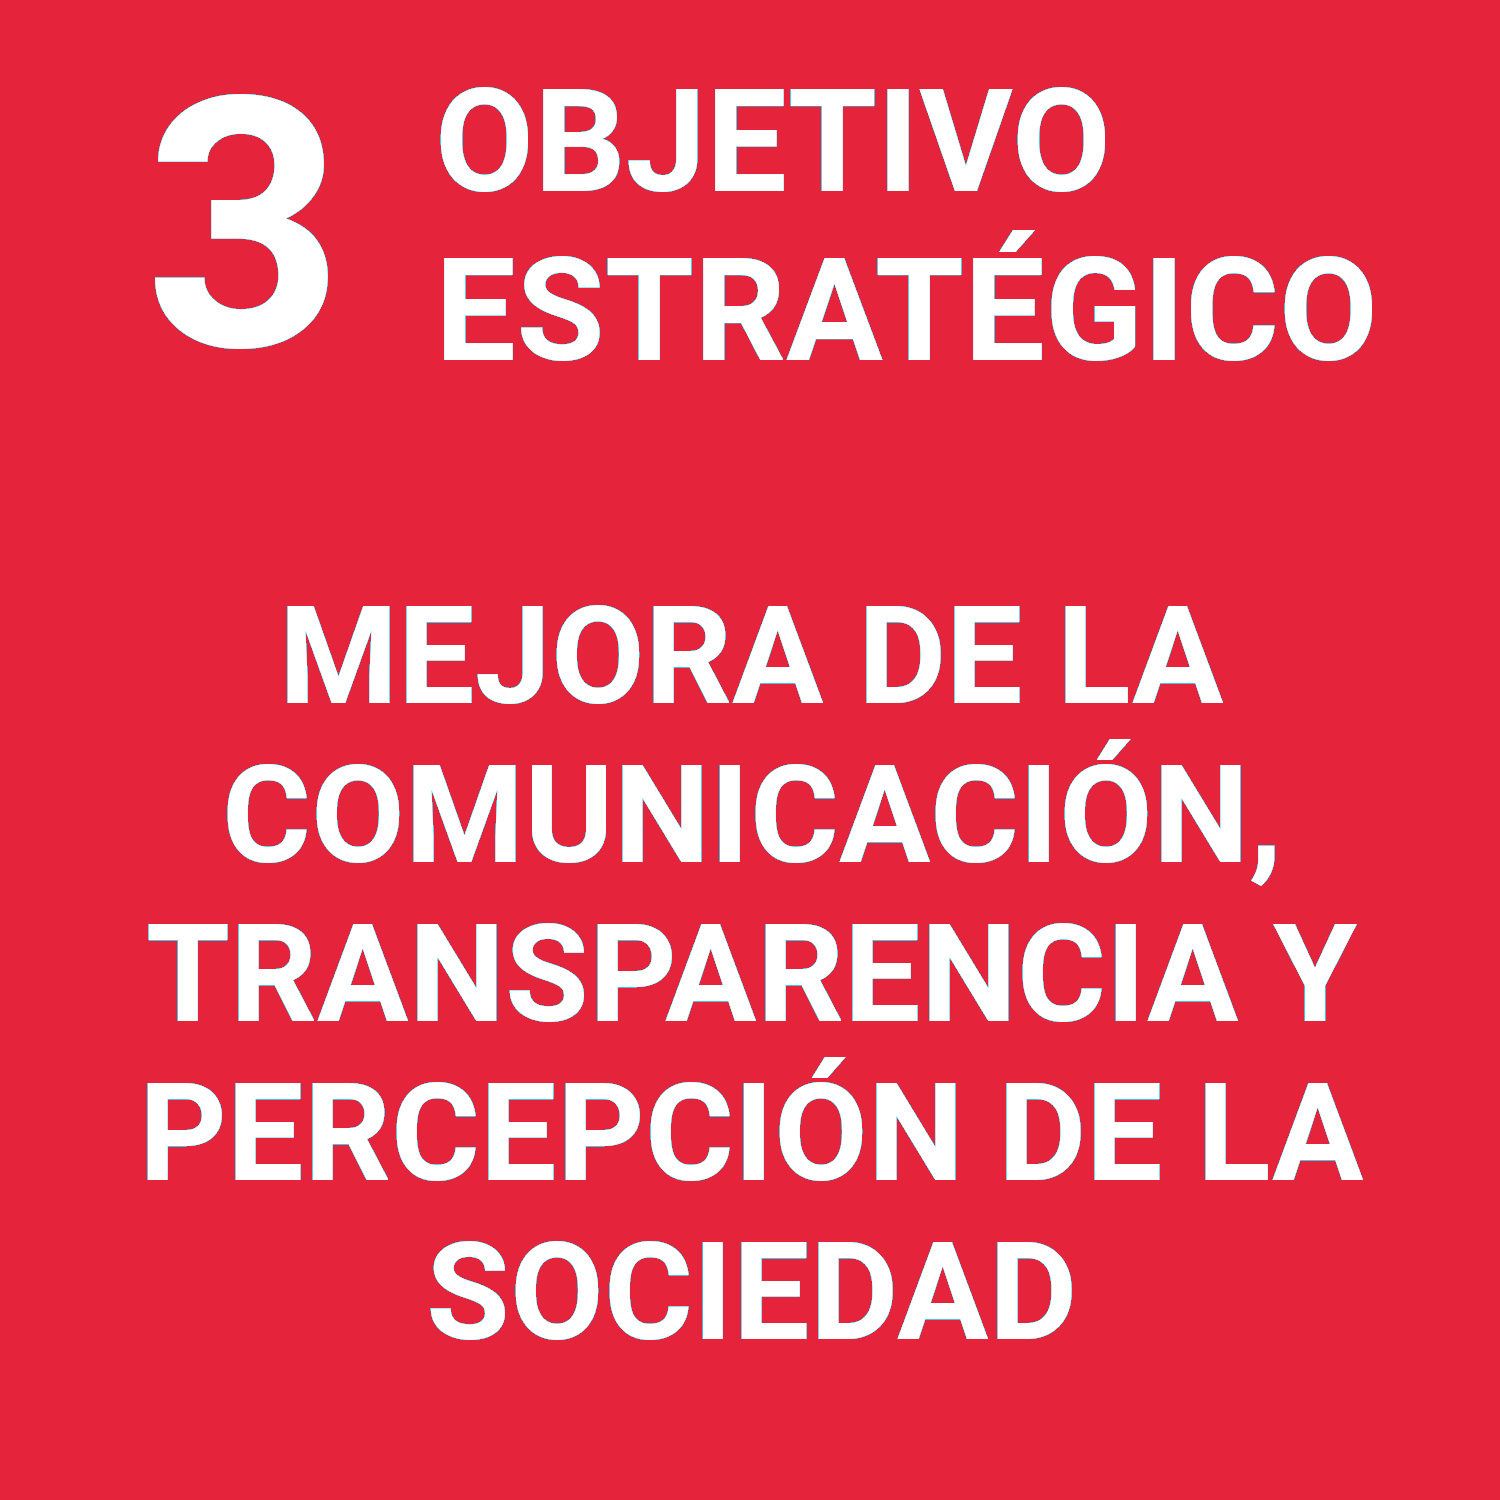 O.E.3 - Mejora de la comunicación, transparencia y percepción de la sociedad